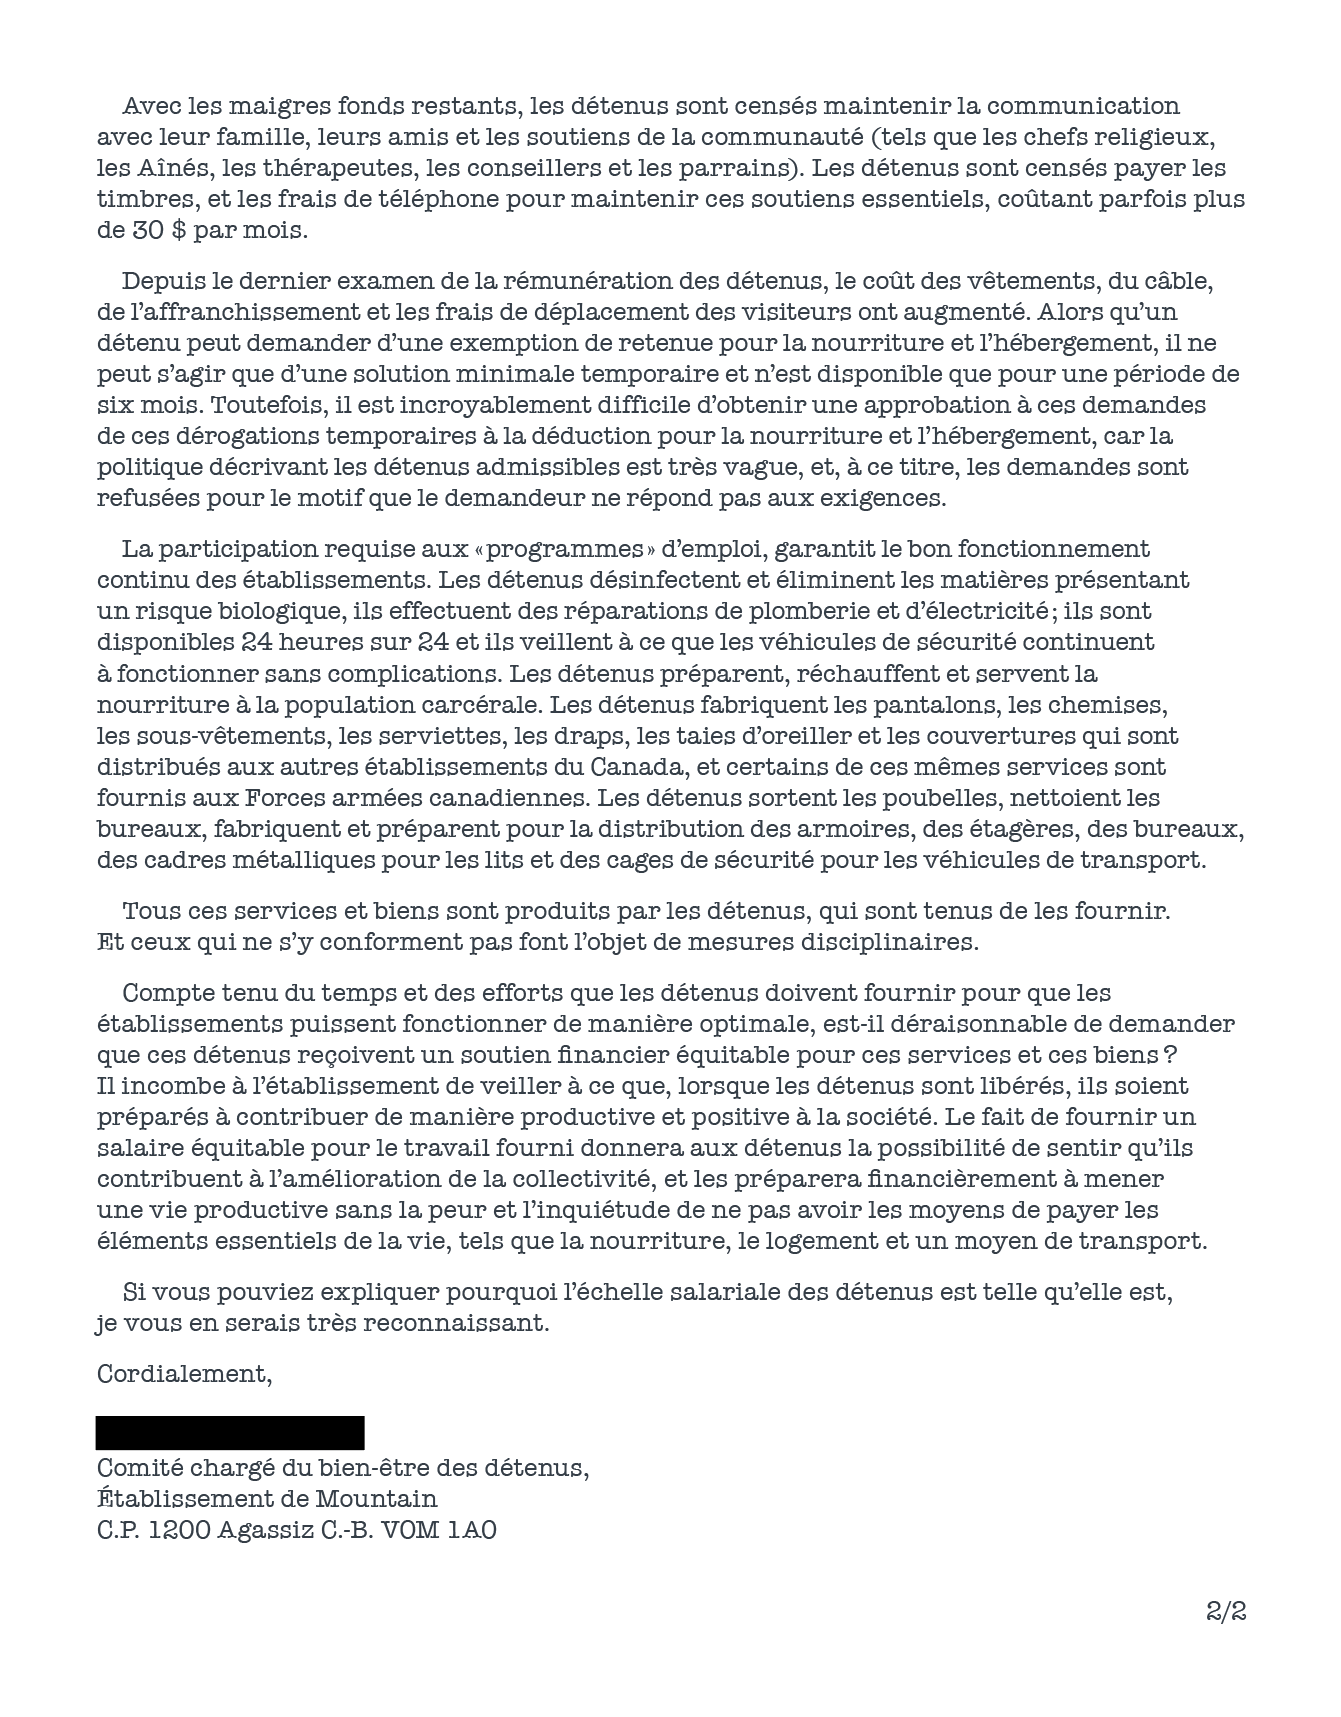 Images de la lettre du Comité du bien-être des détenus de l'Établissement Mountain et de la réponse du Conseil du Trésor.